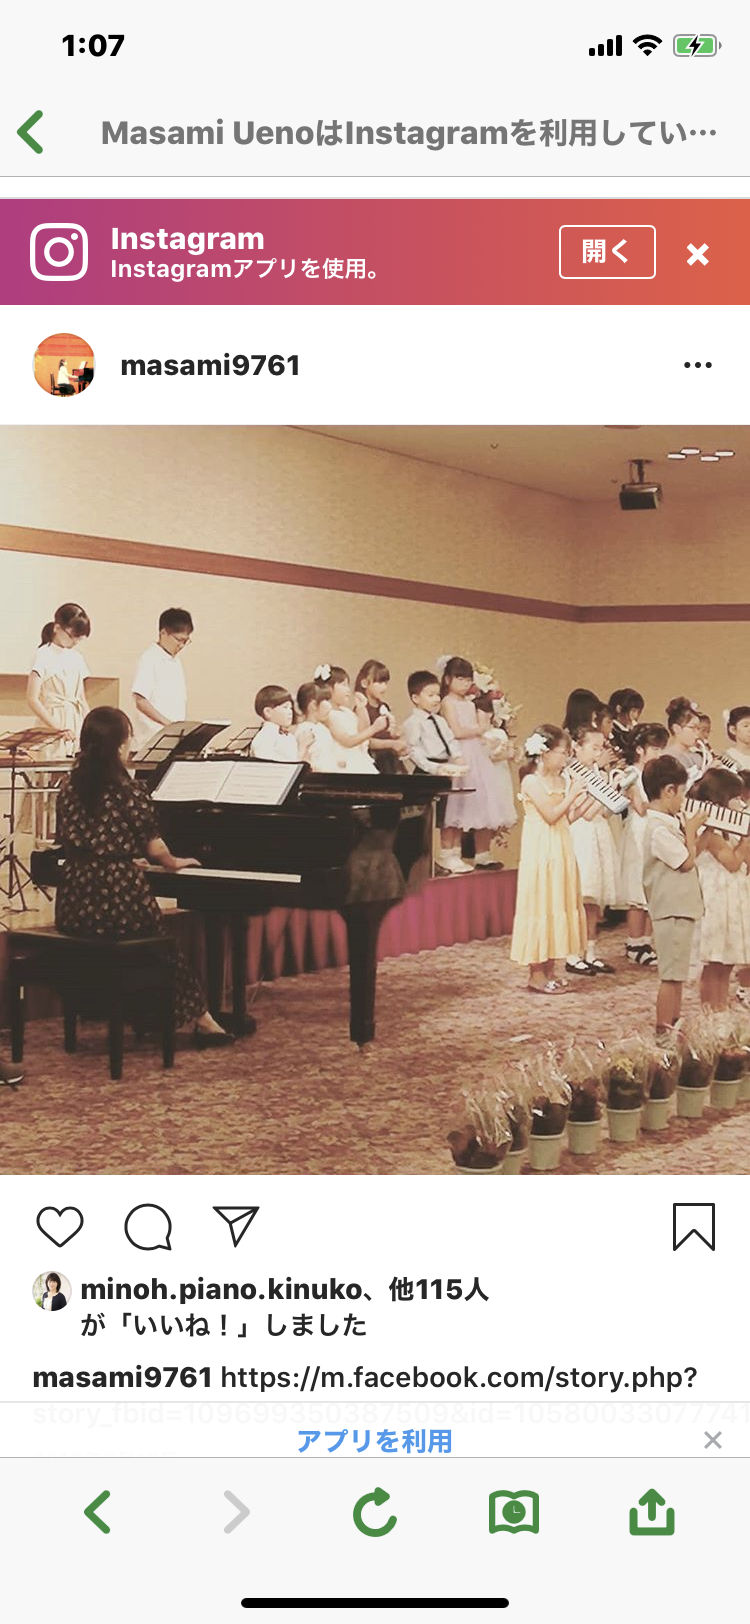 上野ピアノ教室の雰囲気がわかる写真